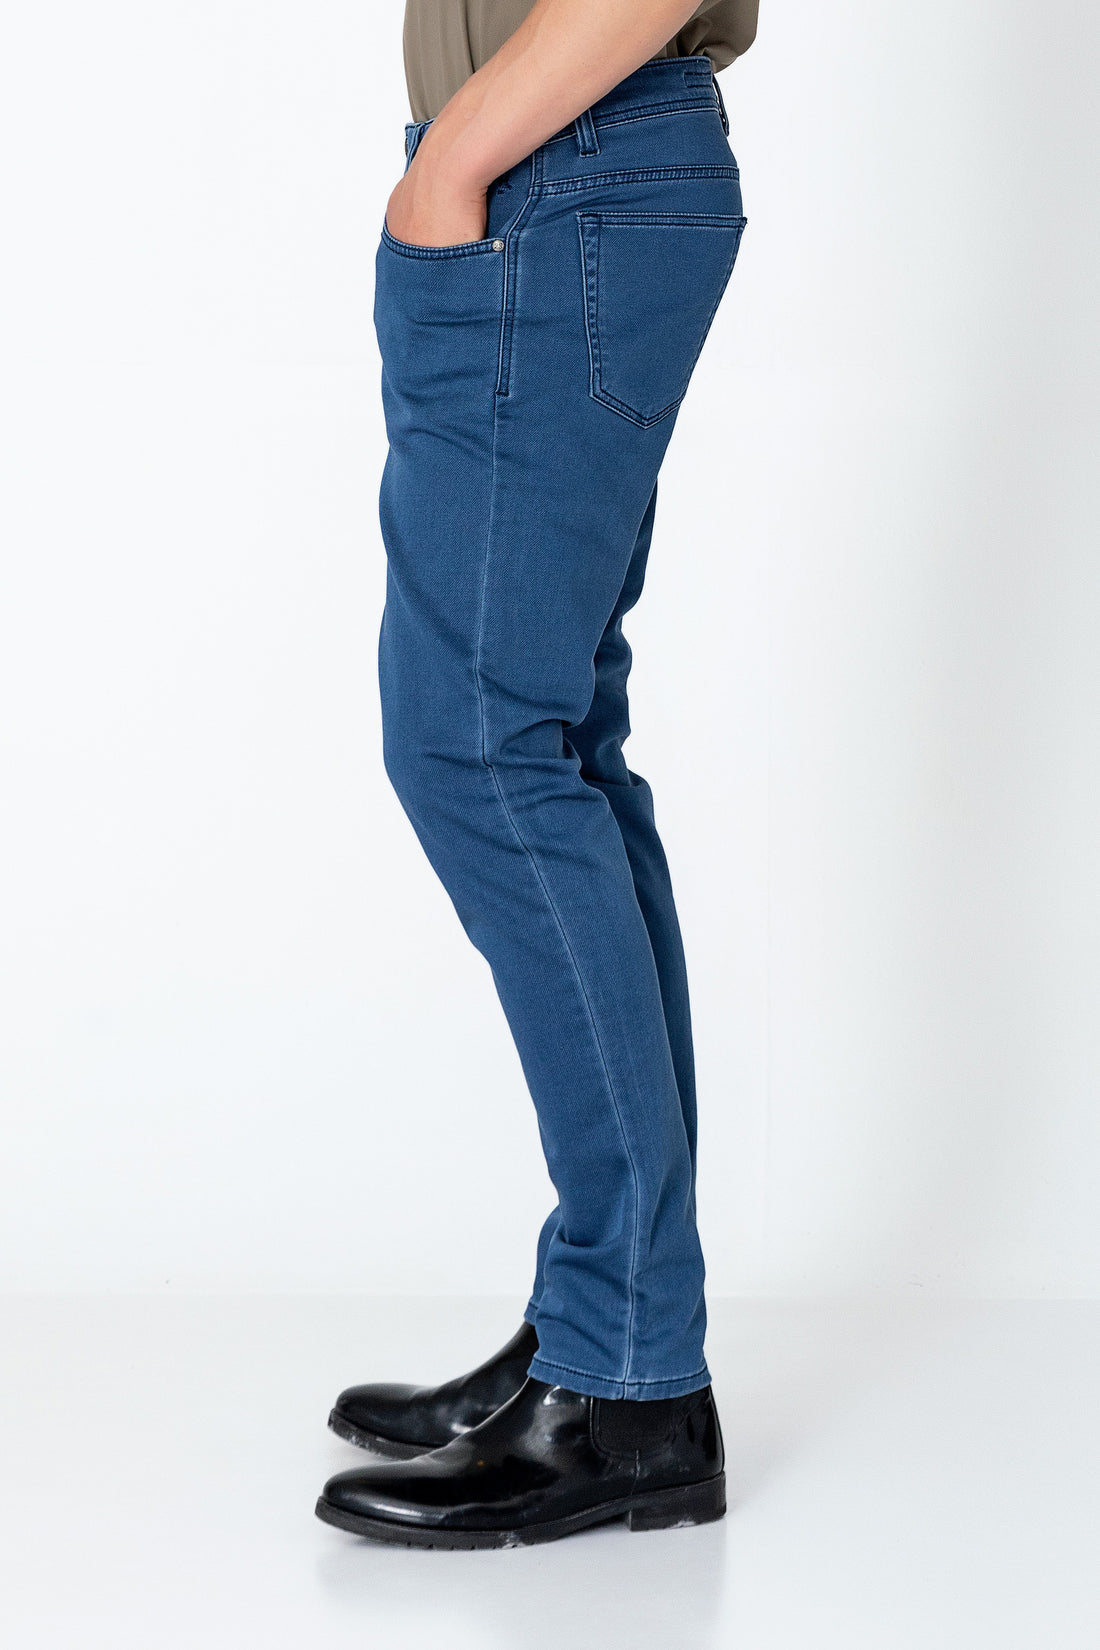 Super Soft 5-pocket Style Pants - Indigo